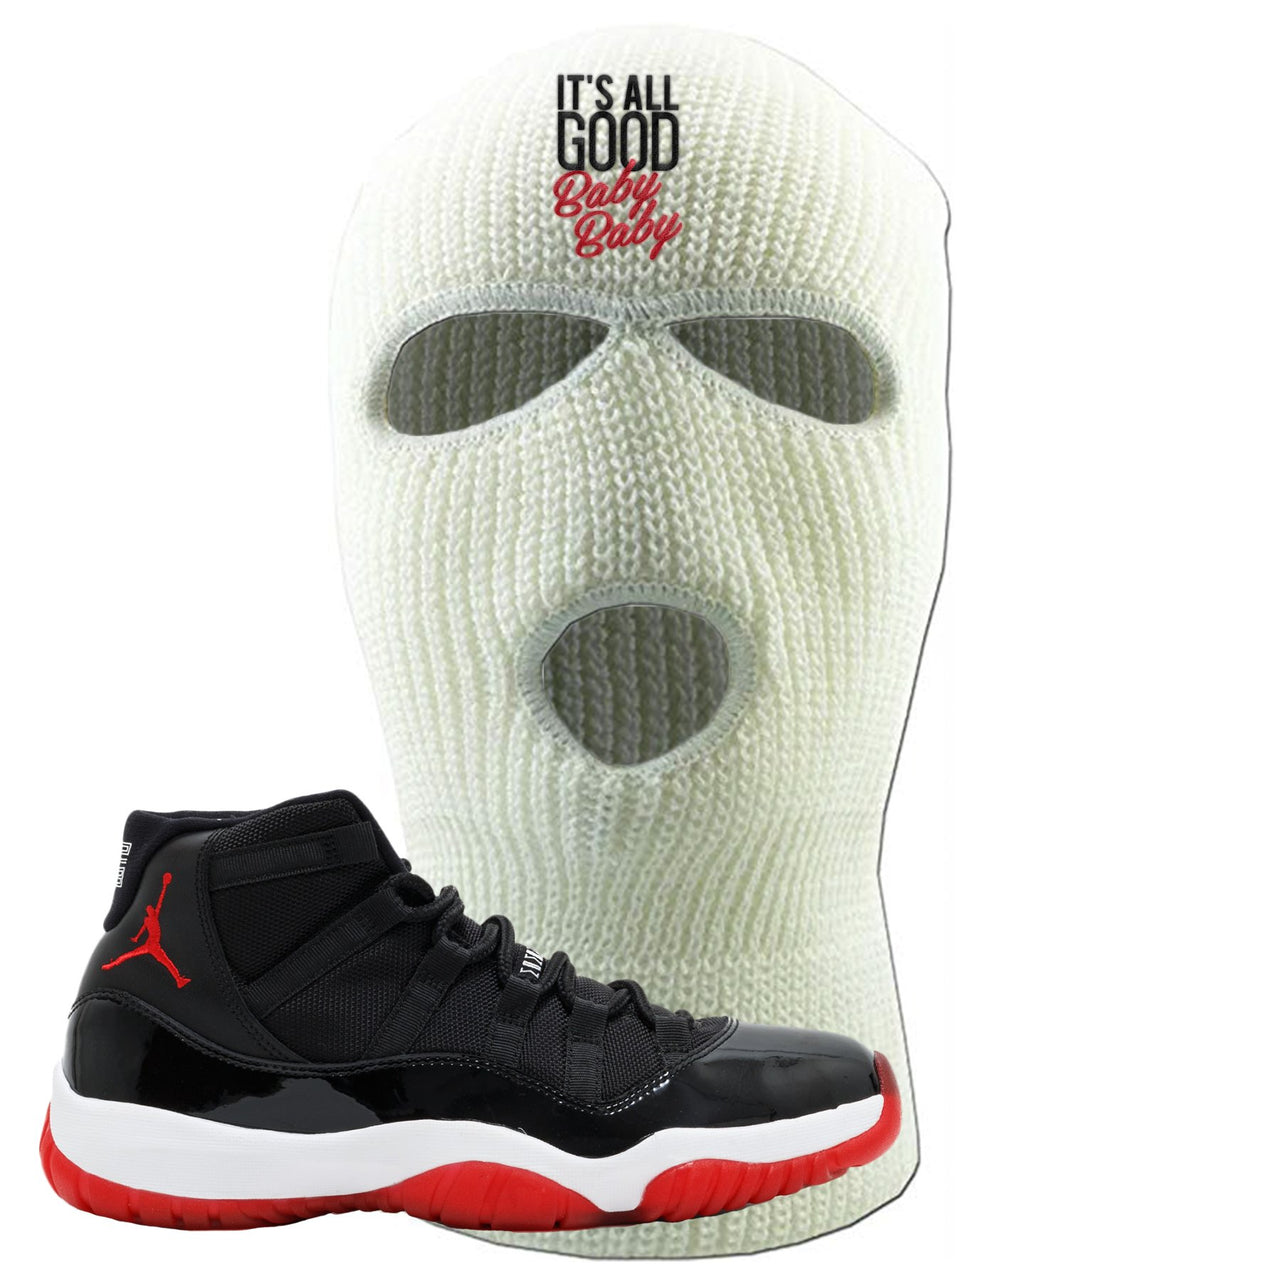 Jordan 11 Bred It's All Good Baby Baby White Sneaker Hook Up Ski Mask